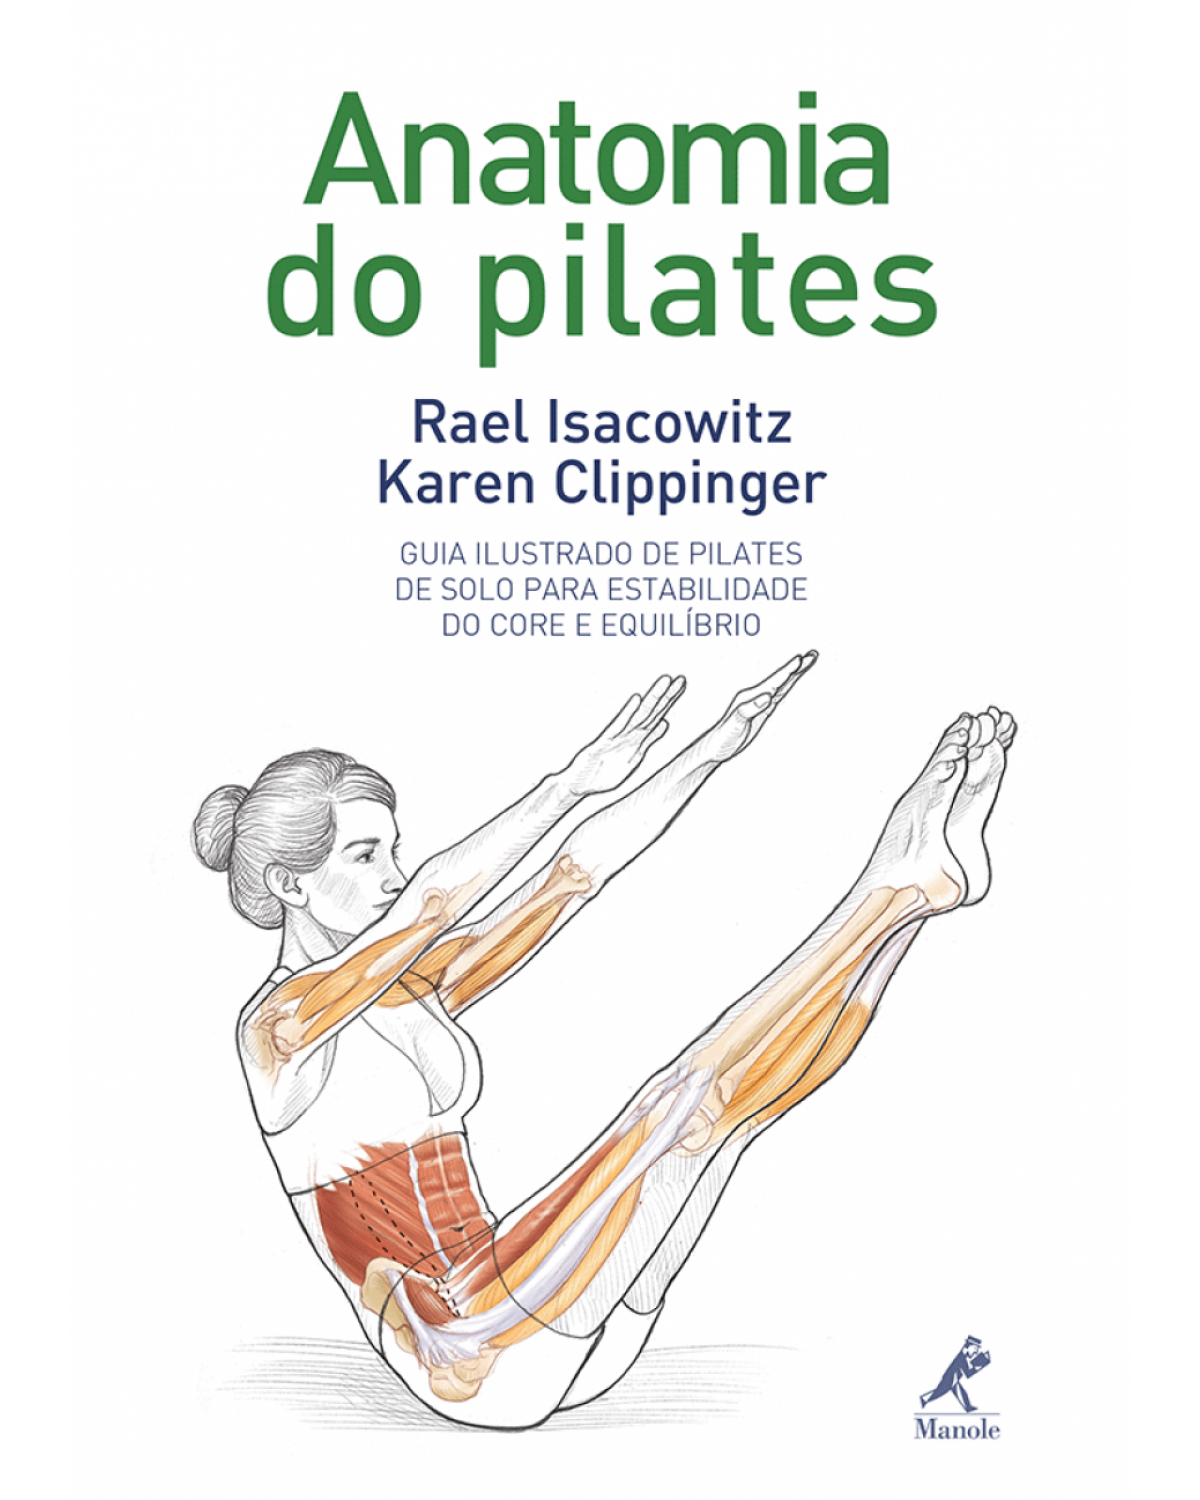 Anatomia do pilates - Guia ilustrado de pilates de solo para estabilidade do core e equilíbrio - 1ª Edição | 2013